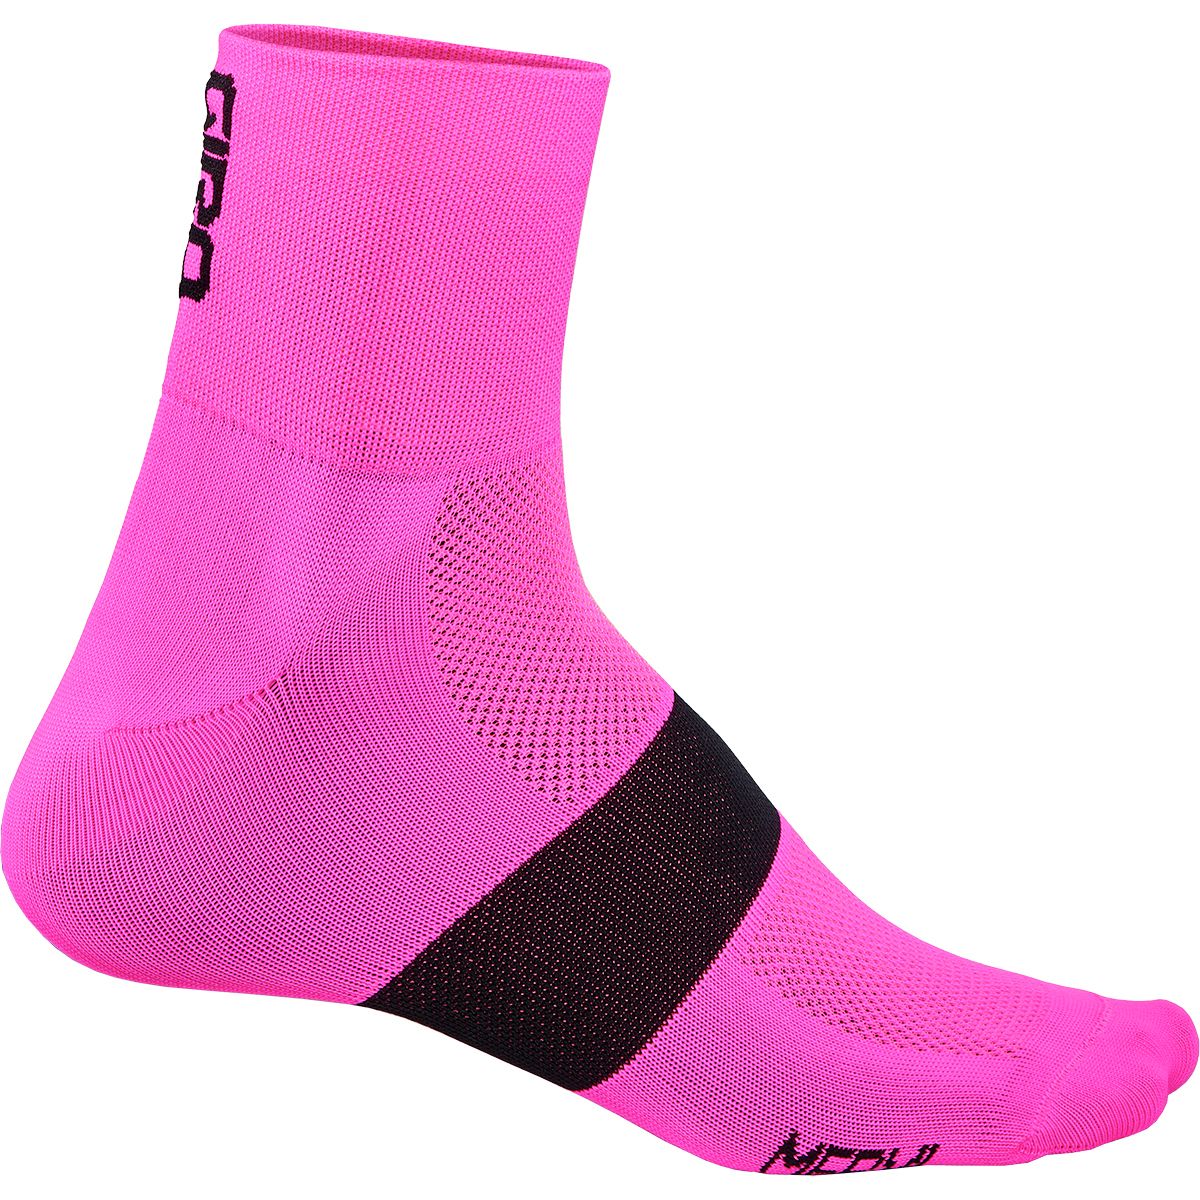 Giro Classic Racer Socks - Men's